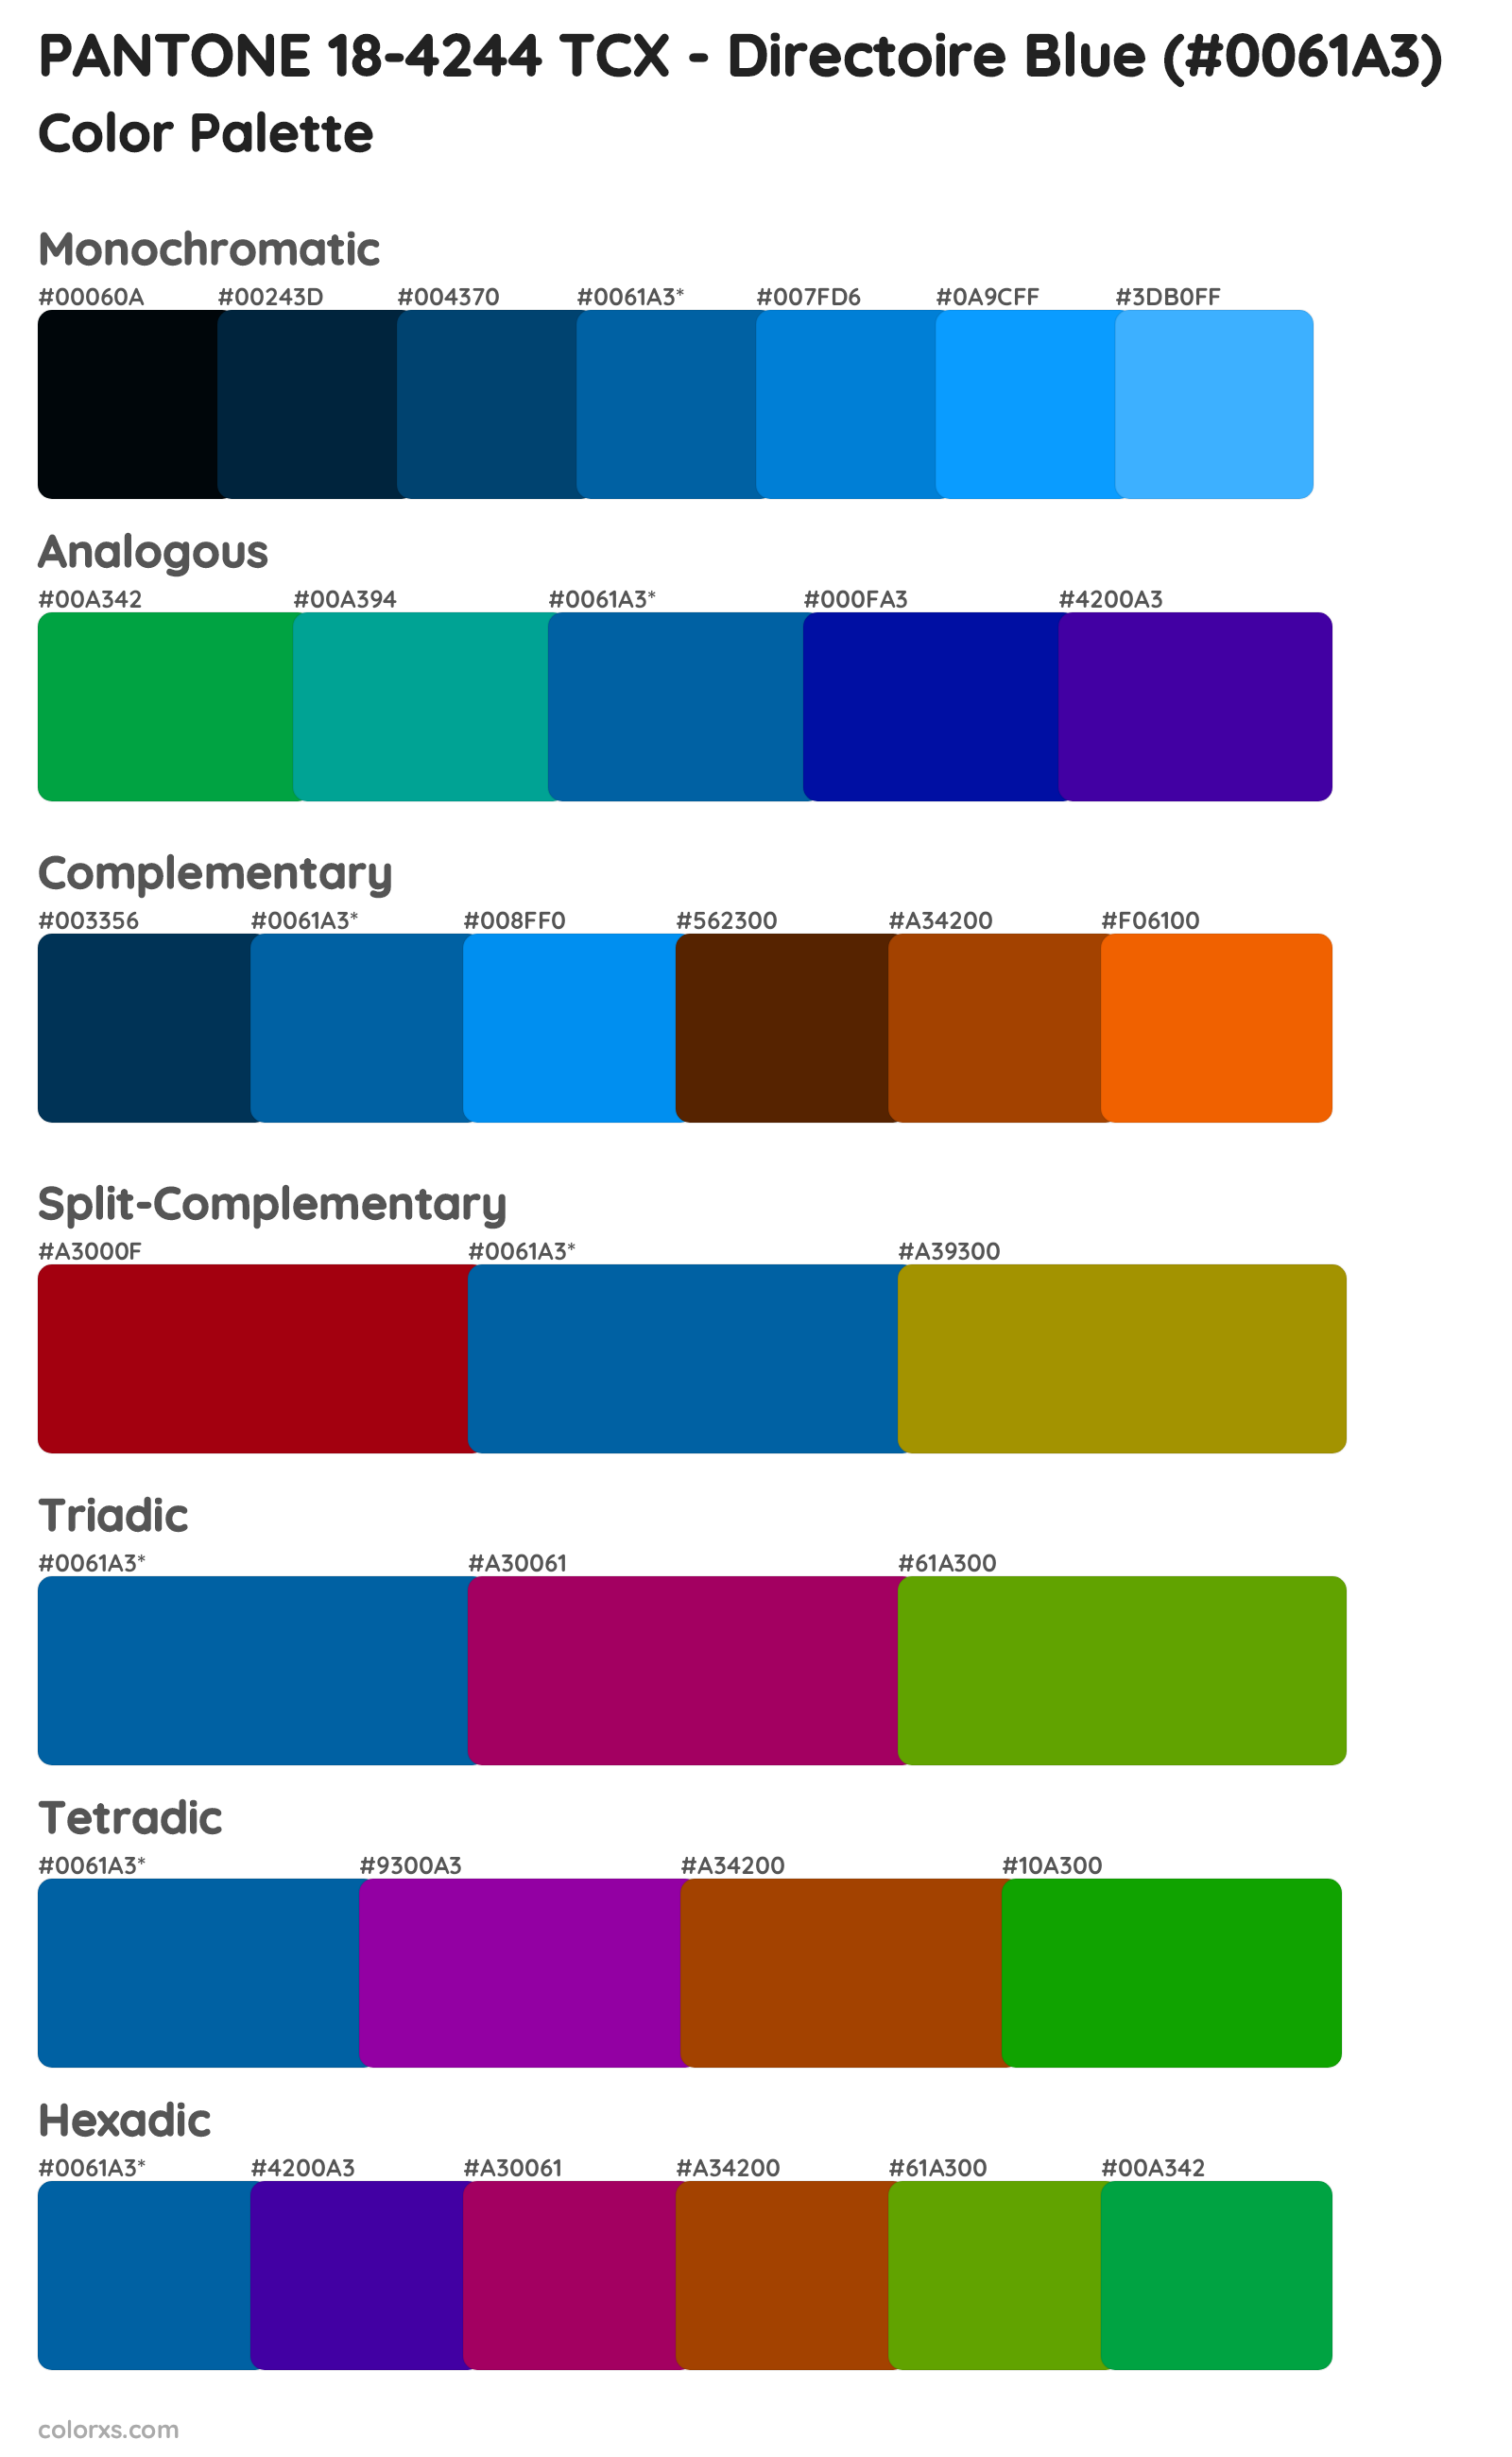 PANTONE 18-4244 TCX - Directoire Blue Color Scheme Palettes